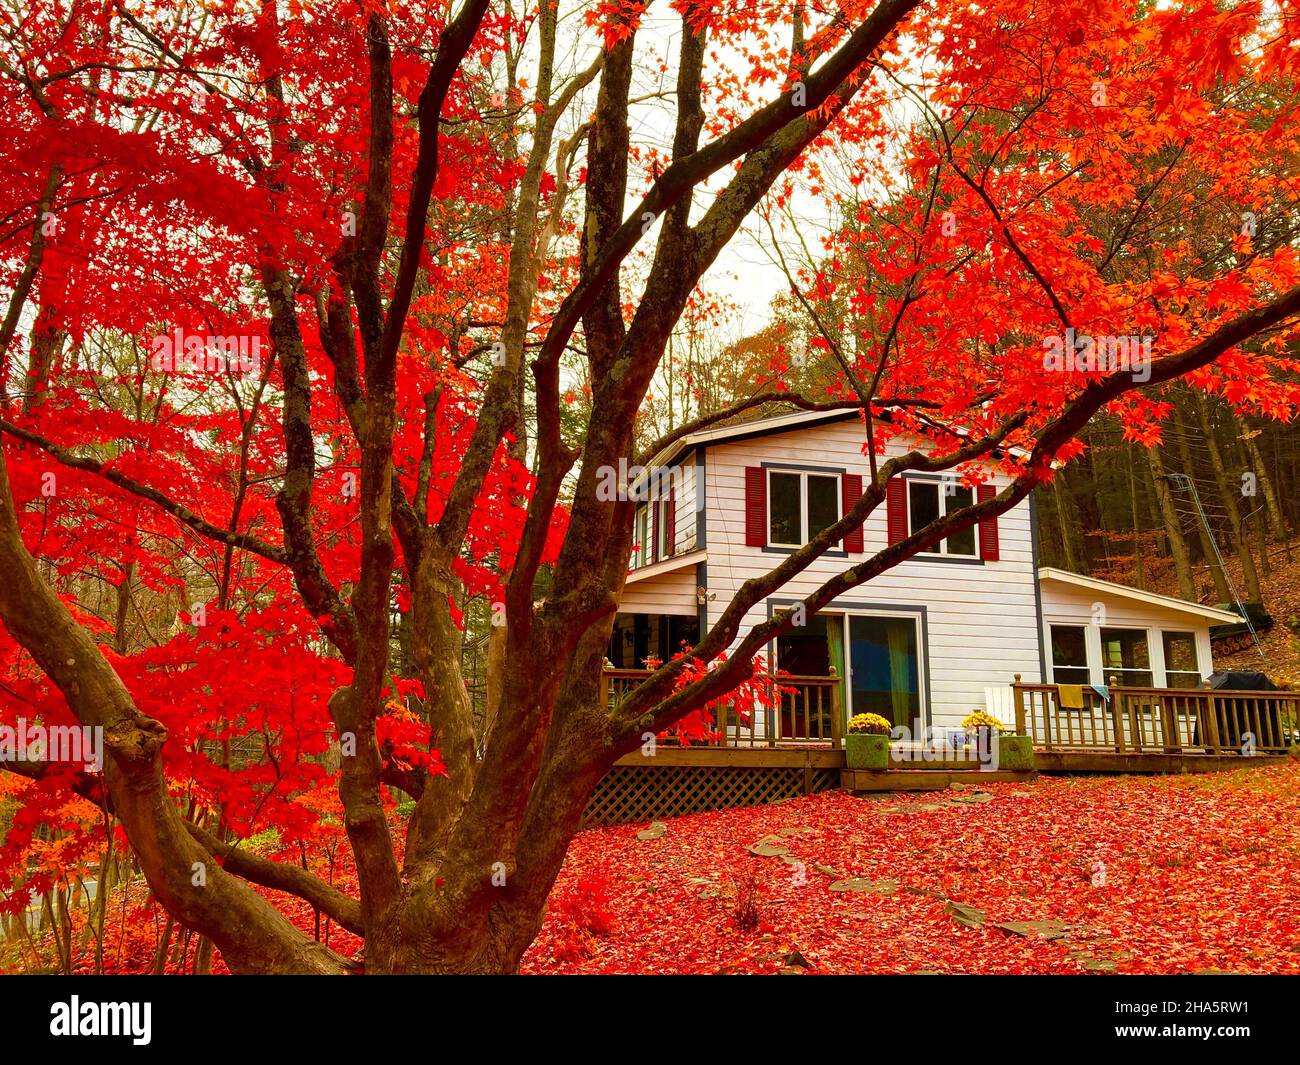 Haus und japanischer Ahornbaum während Laub im Herbst, woodstock, New york State, usa Stockfoto